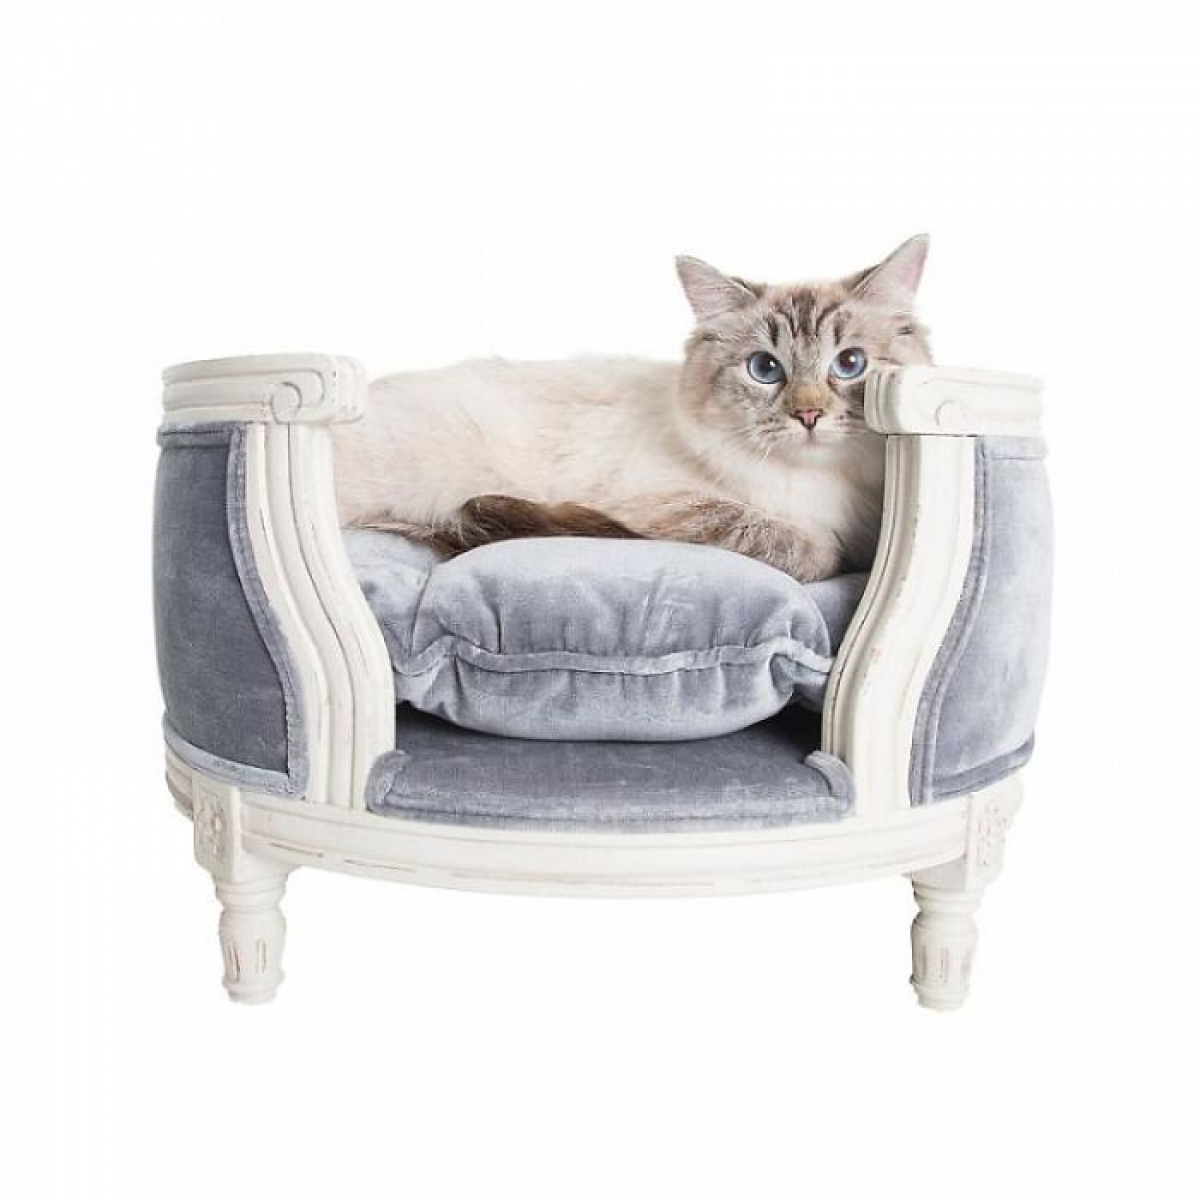 Giường nhung màu xám kèm đệm nằm, các chi tiết thiết kế tỉ mỉ dành cho cô mèo này có giá 945 đô.